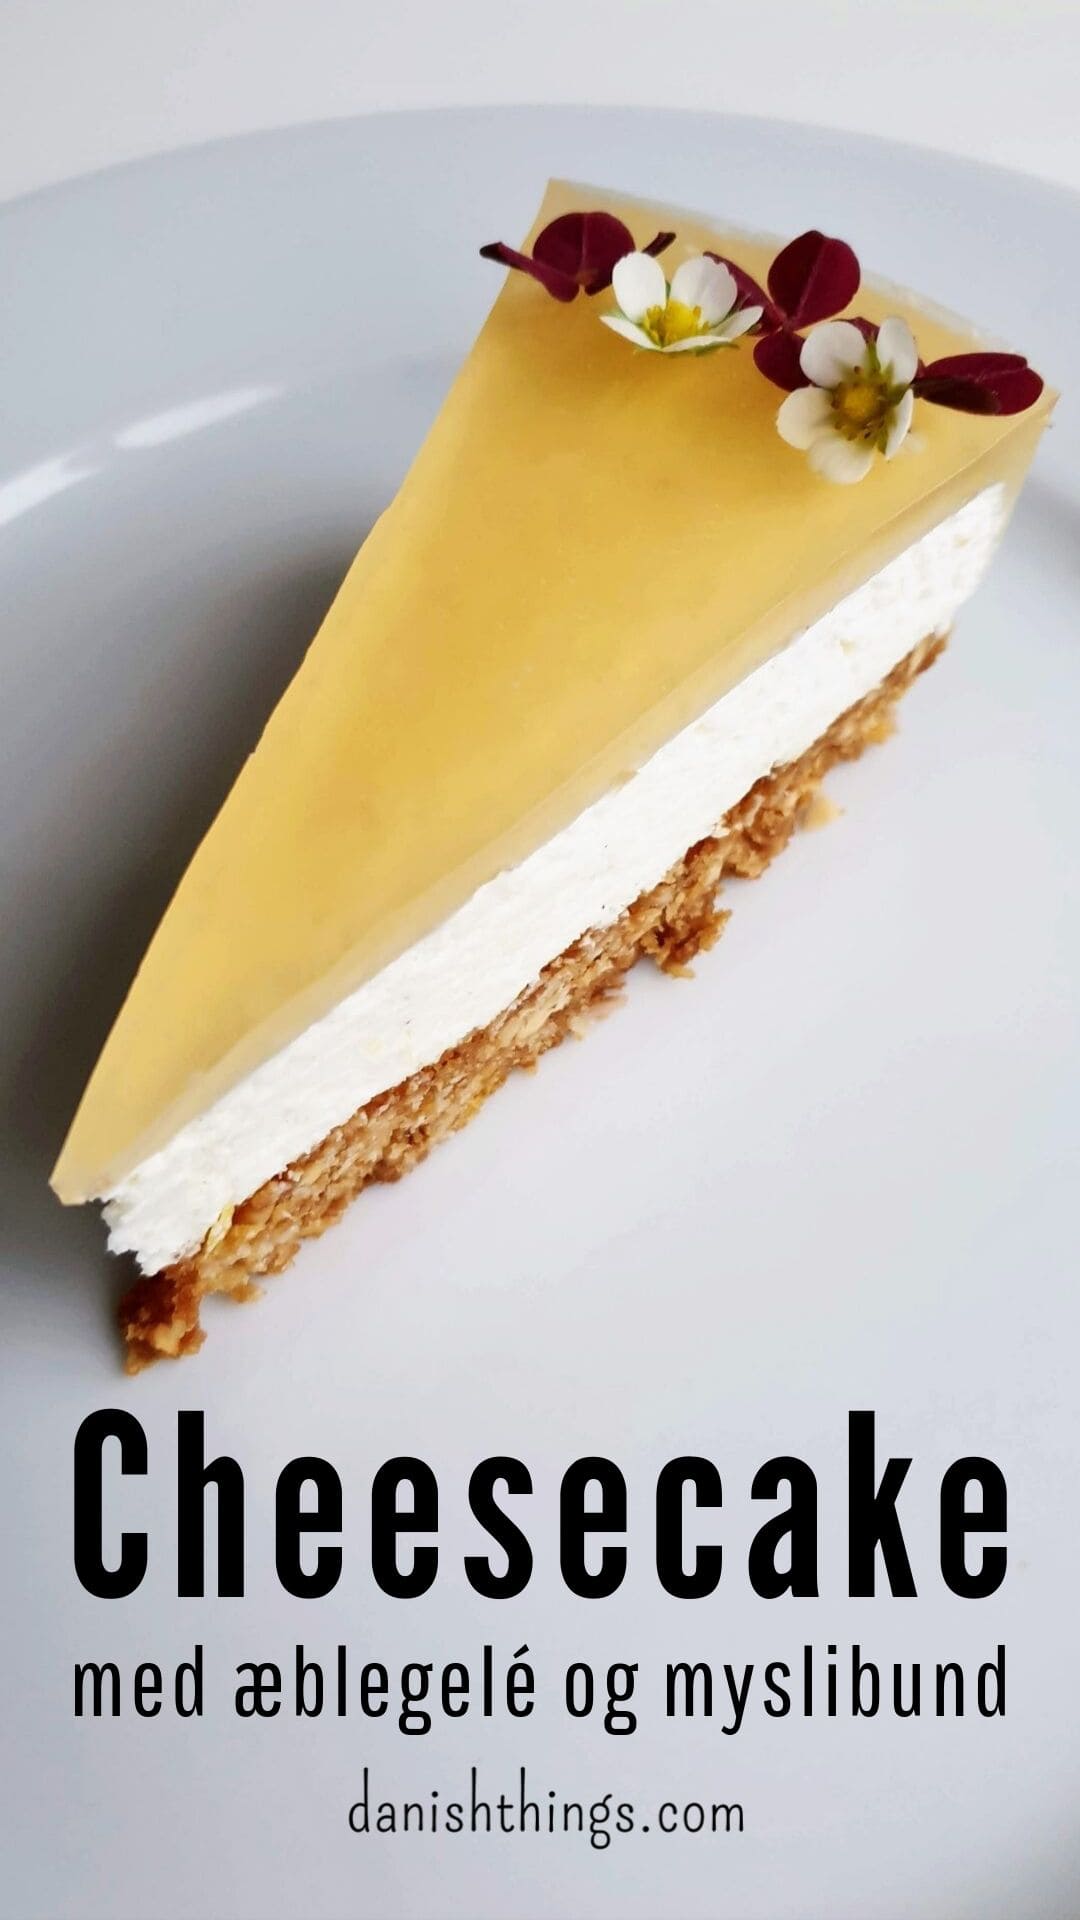 Cheesecake med citron - en lækker cheesecake med myslibund og æblegelé. Du kan servere den lækre cheesecake året rundt, spis den til kaffen, tag den med på arbejdet, server den til påskefrokosten, på skovturen, til fødselsdagen, på en søndag... Find opskrifter, print og inspiration til årets gang på danishthings.com © Christel Parby - Danish Things #DanishThings #cheesecake #myslibund #mysli #citron #citronmousse #æblegele #æble #forårskage #påske #påskekage #skovtur #efterår #luftig #lækker 